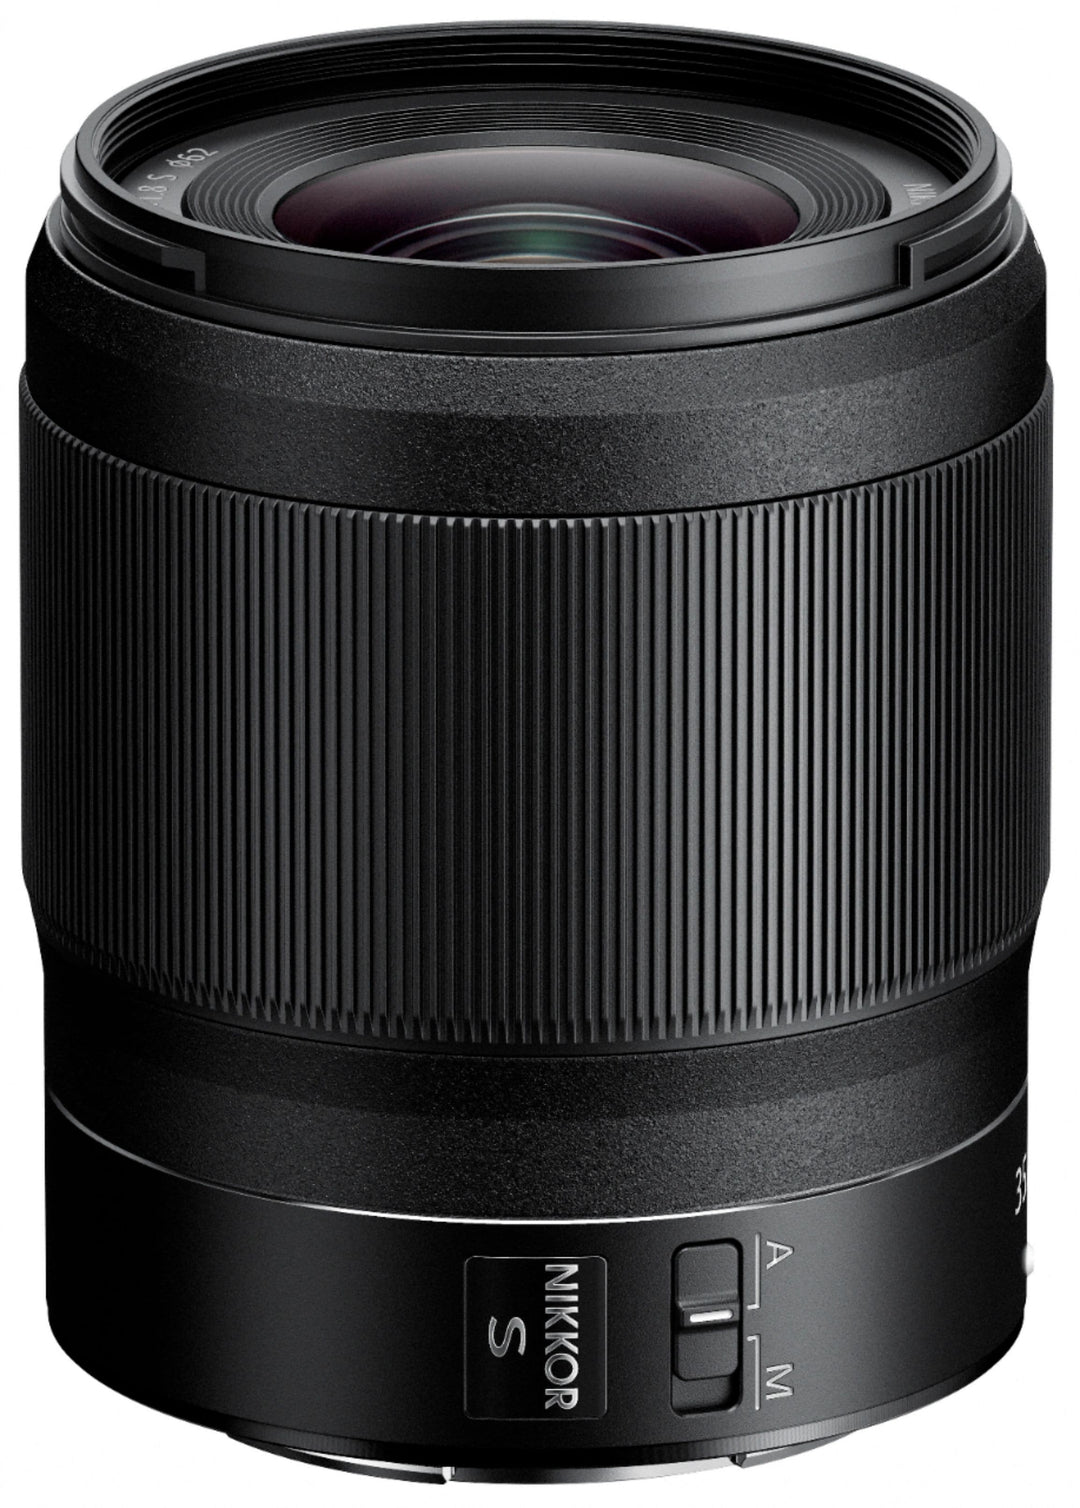 NIKKOR Z 35mm f/1.8 S Standard Prime Lens for Nikon Z Cameras - Black_2